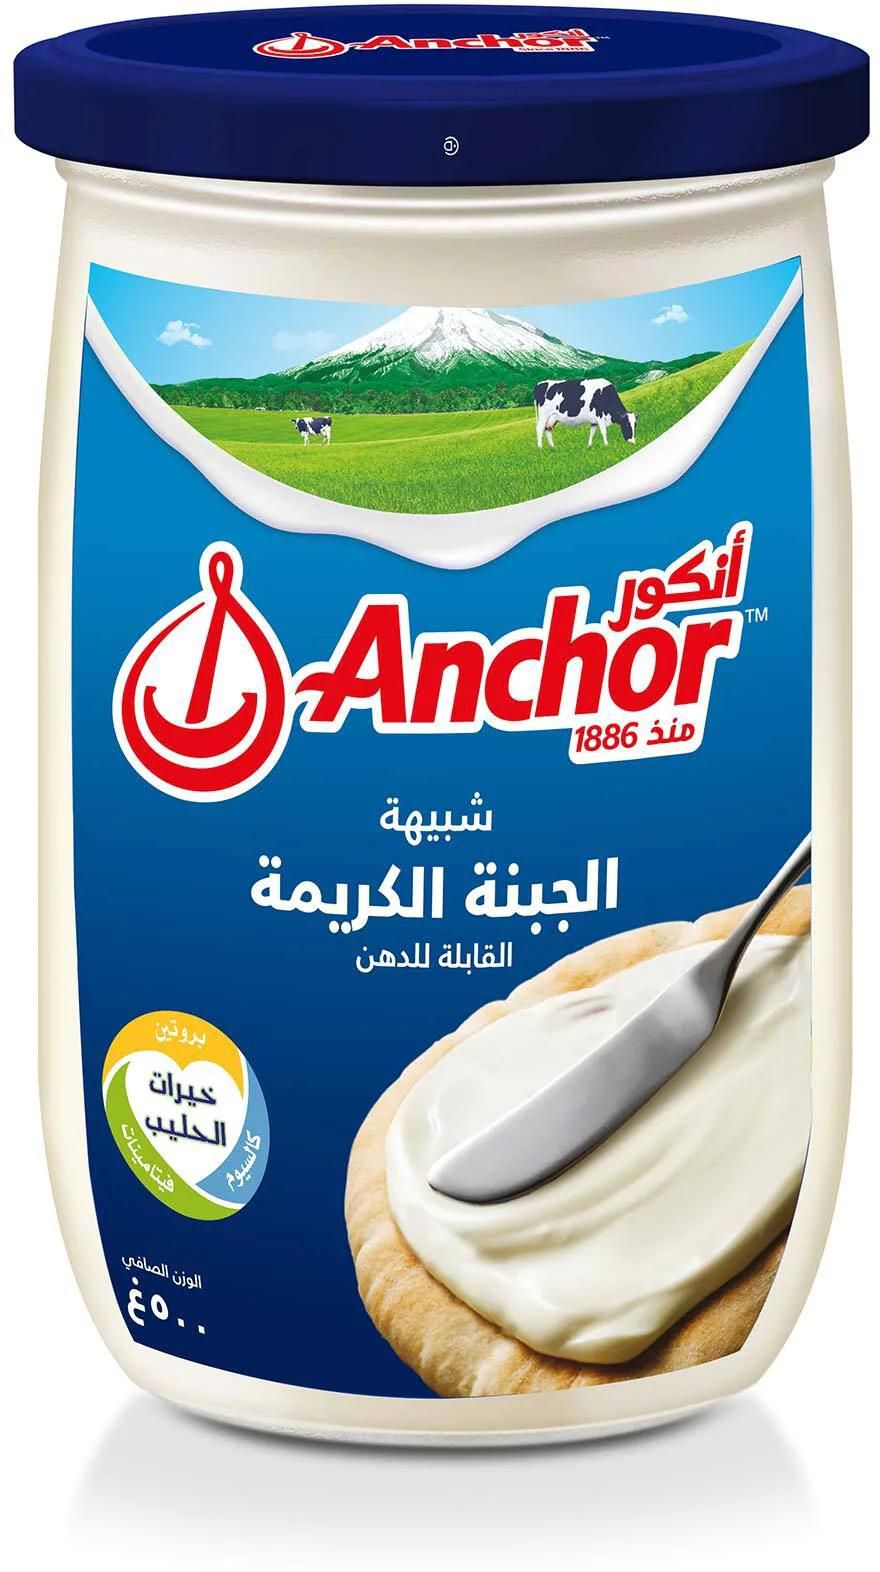 Anchor cream cheese analogue spread 500g